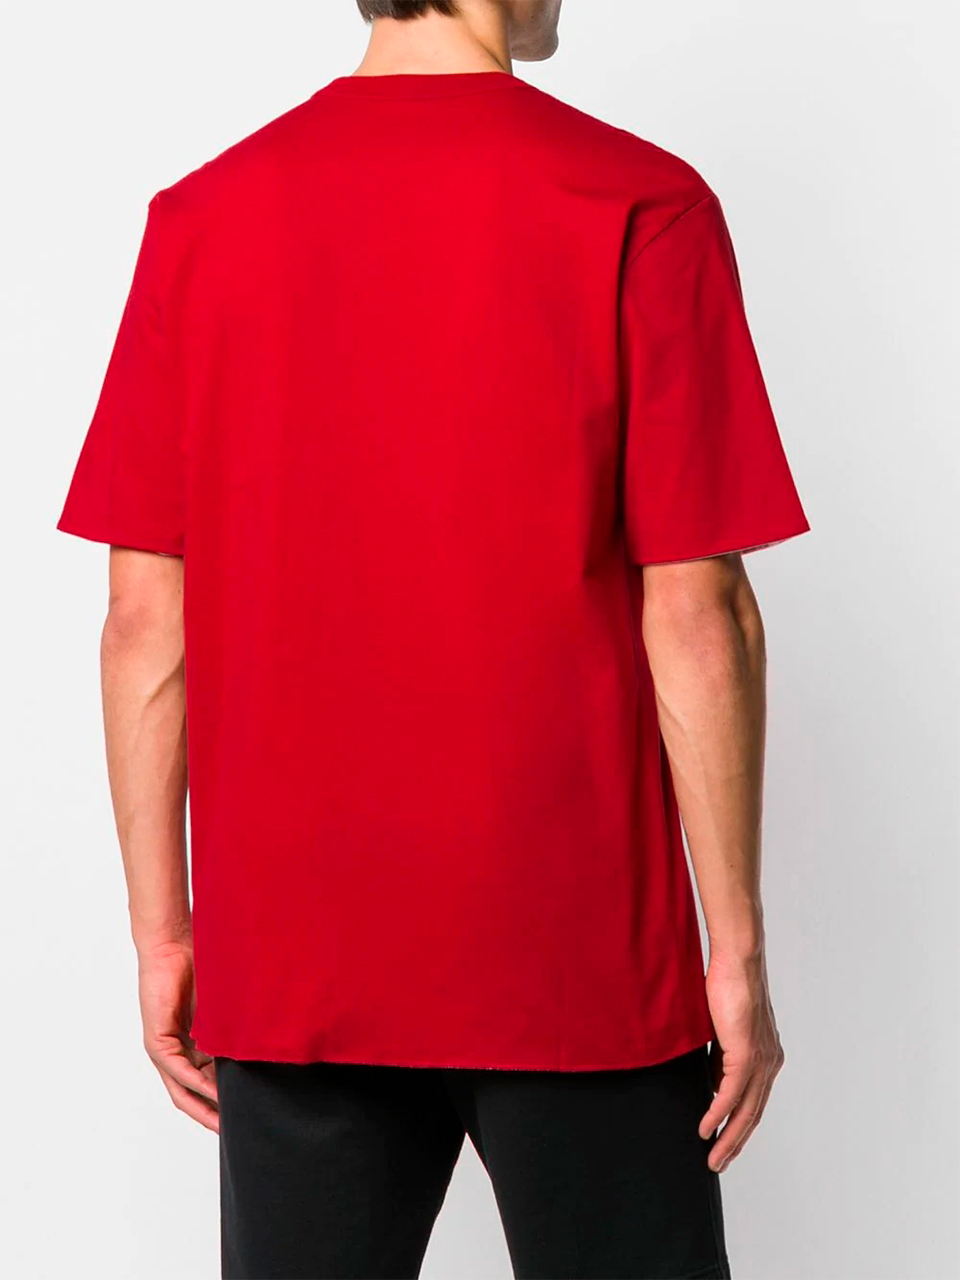 Imagem de: Camiseta Palace Vermelha com Logo